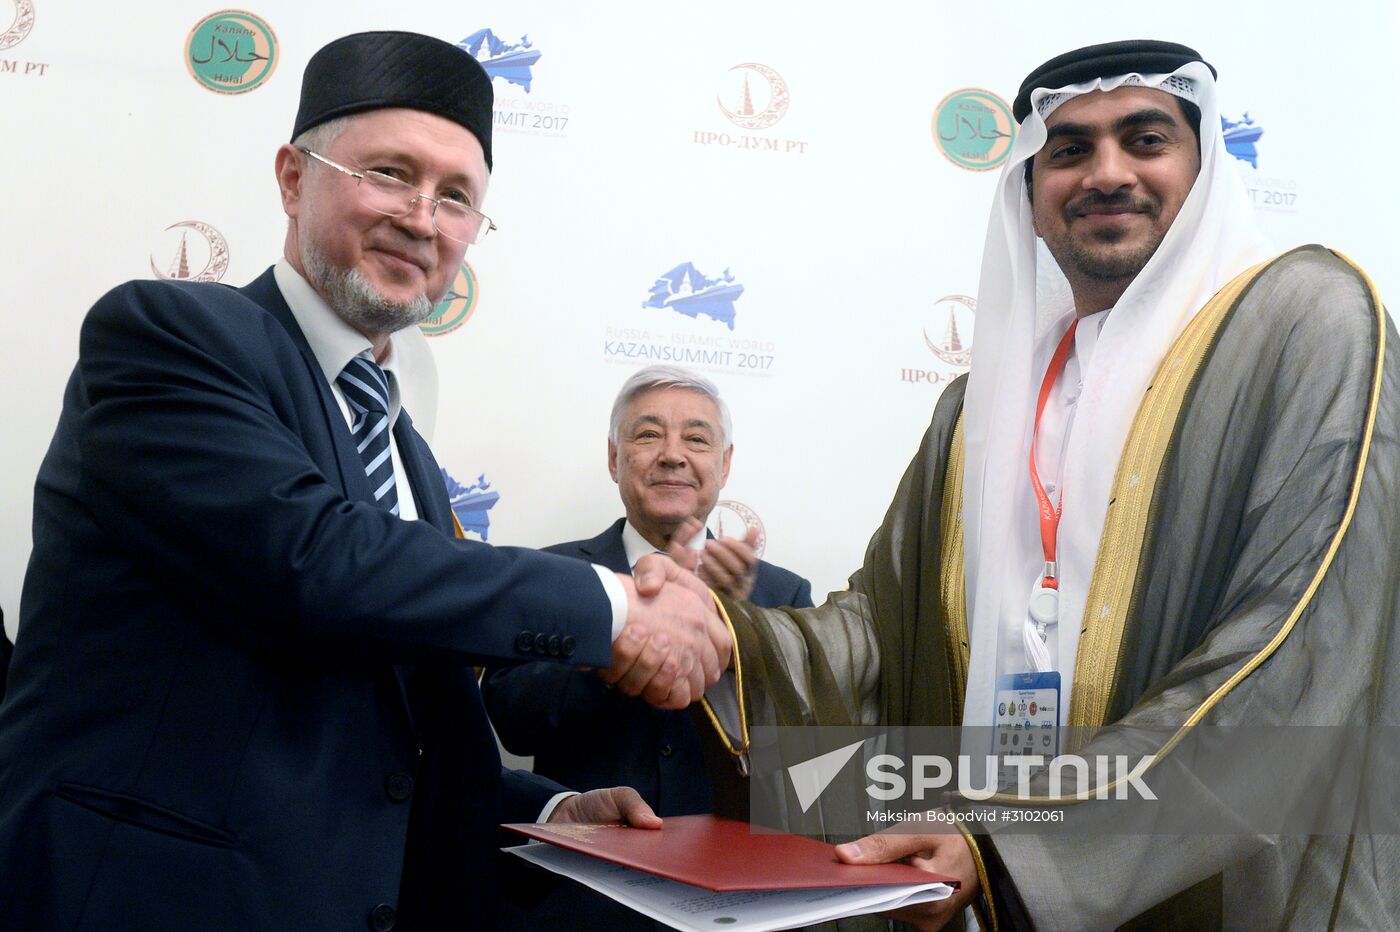 Russia - Islamic World: KazanSummit 2017 9th International Economic Summit. Day one